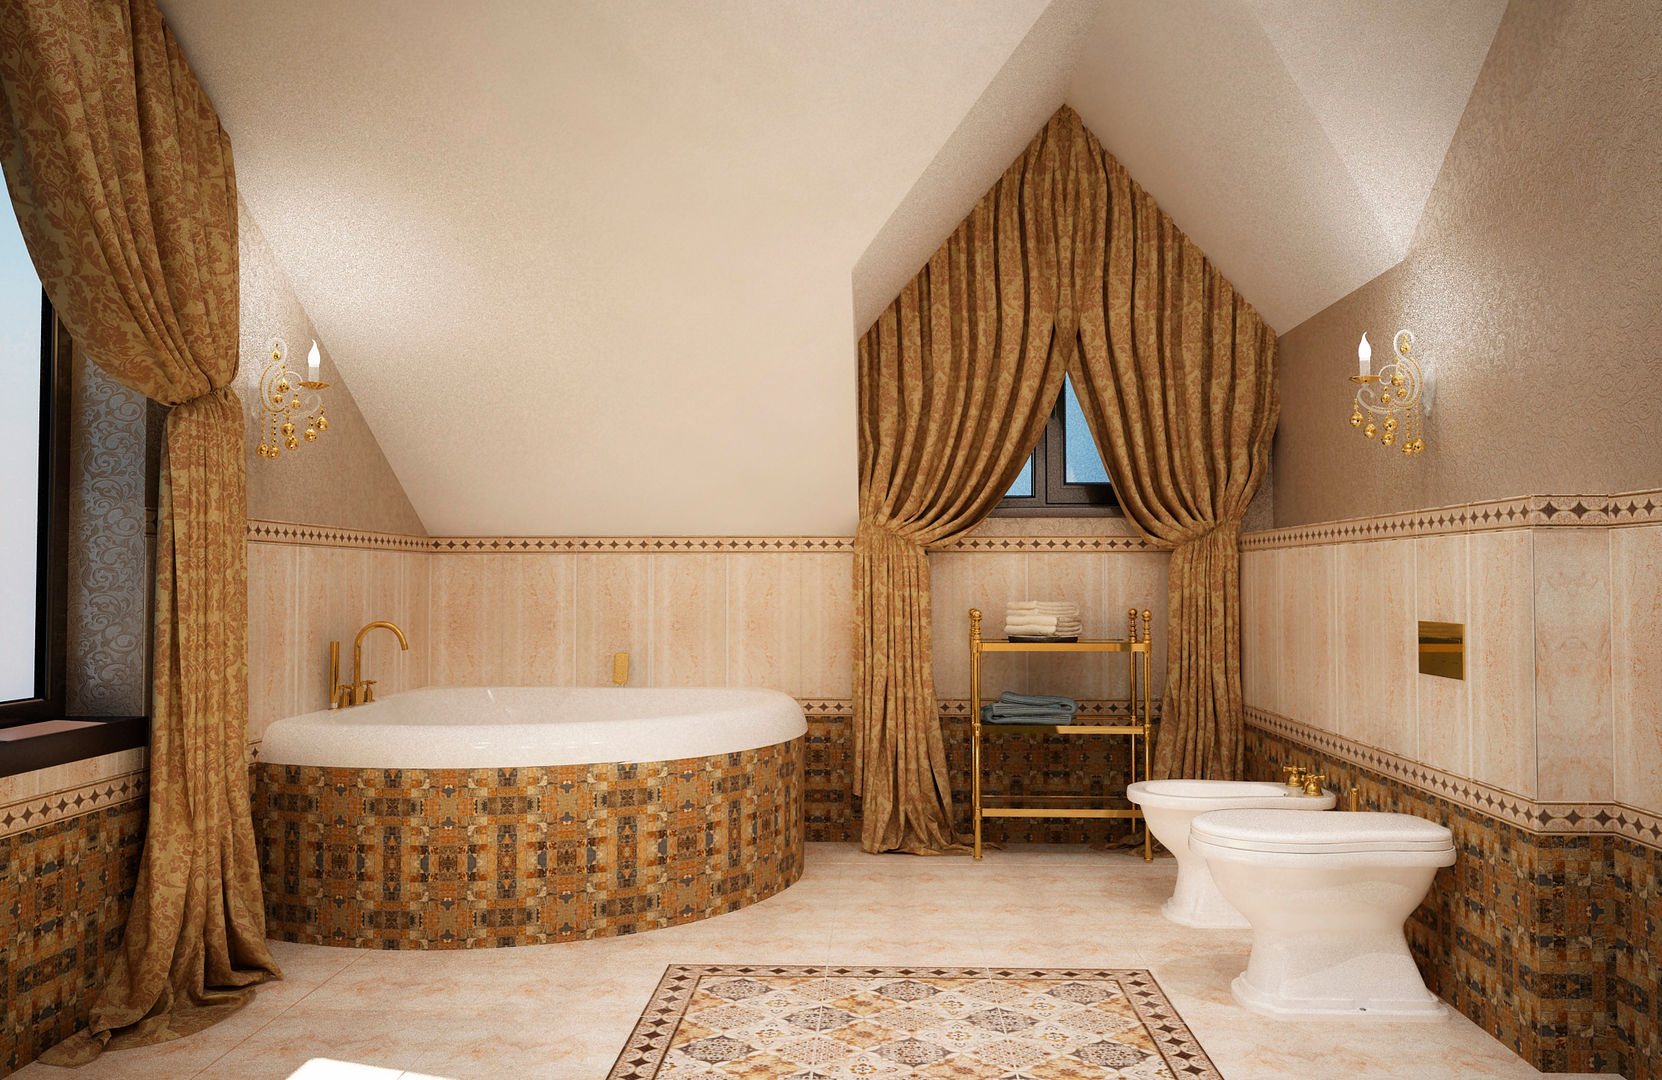 Ванная комната на мансарде, Настасья Евглевская Настасья Евглевская Bathroom